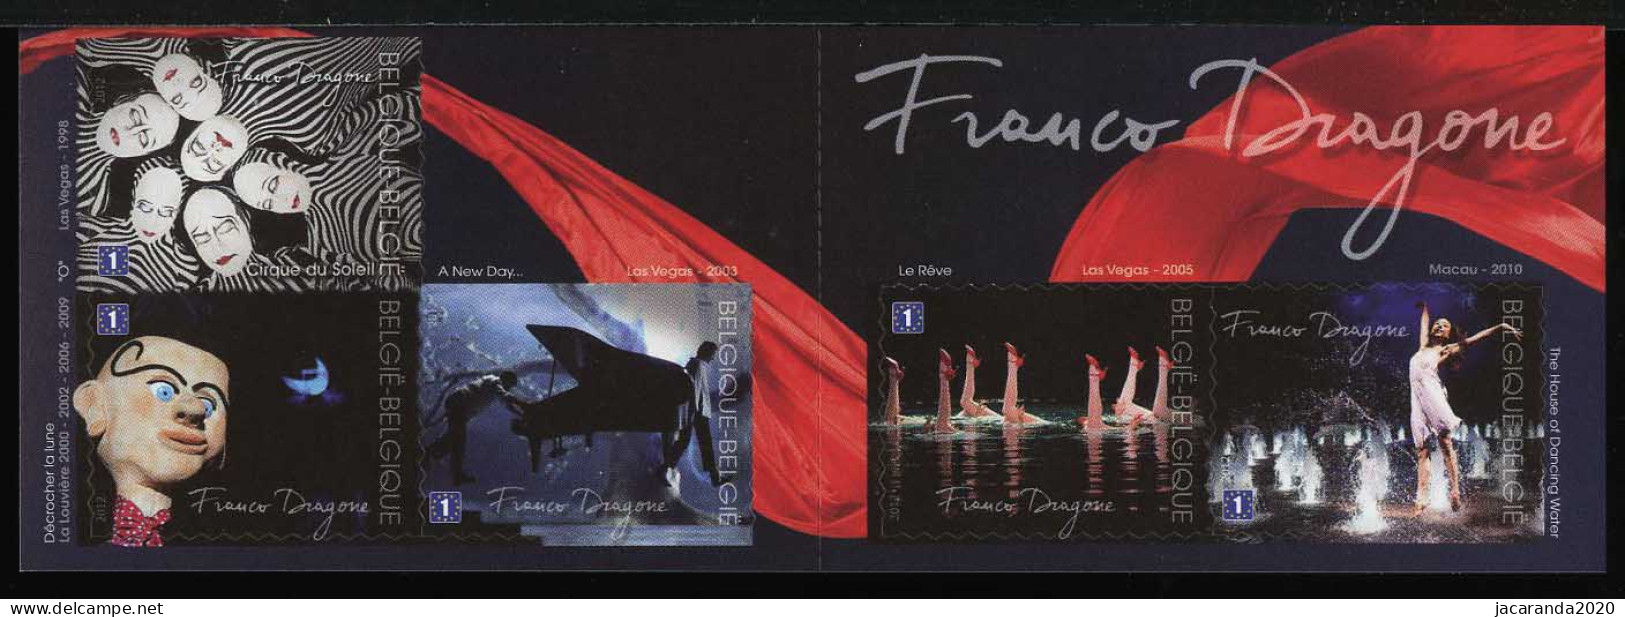 België B127 - Franco Dragone - Cirque Du Soleil - 1E - Zelfklevend - Autocollants - 2012 - 1997-… Validez Permanente [B]